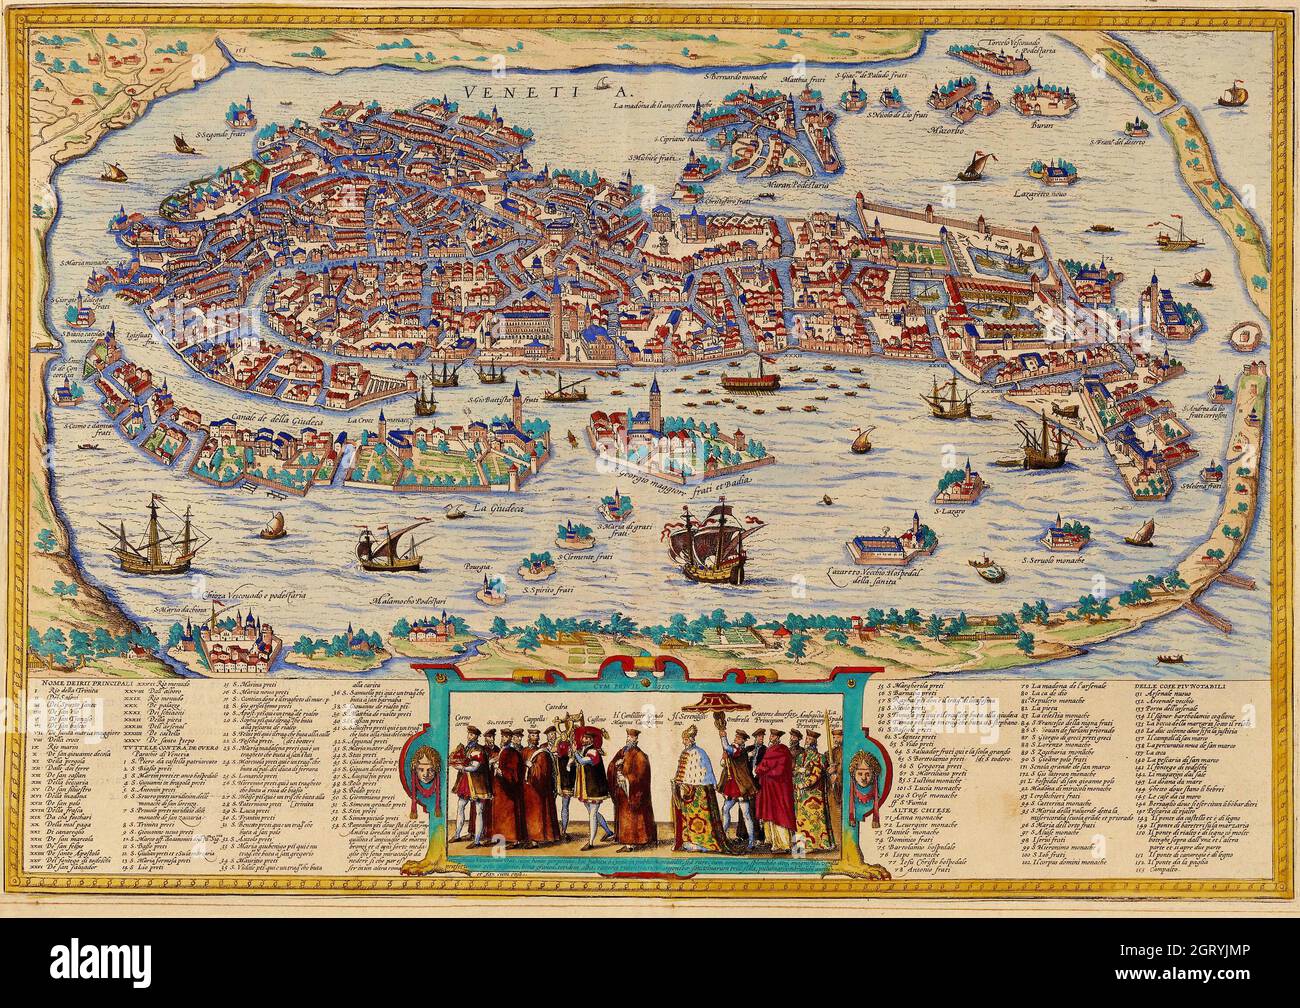 Karte von Venedig, 1572 von Braun und Hogenberg. Stich von Bolognino Zaltieri, 1565. Stockfoto